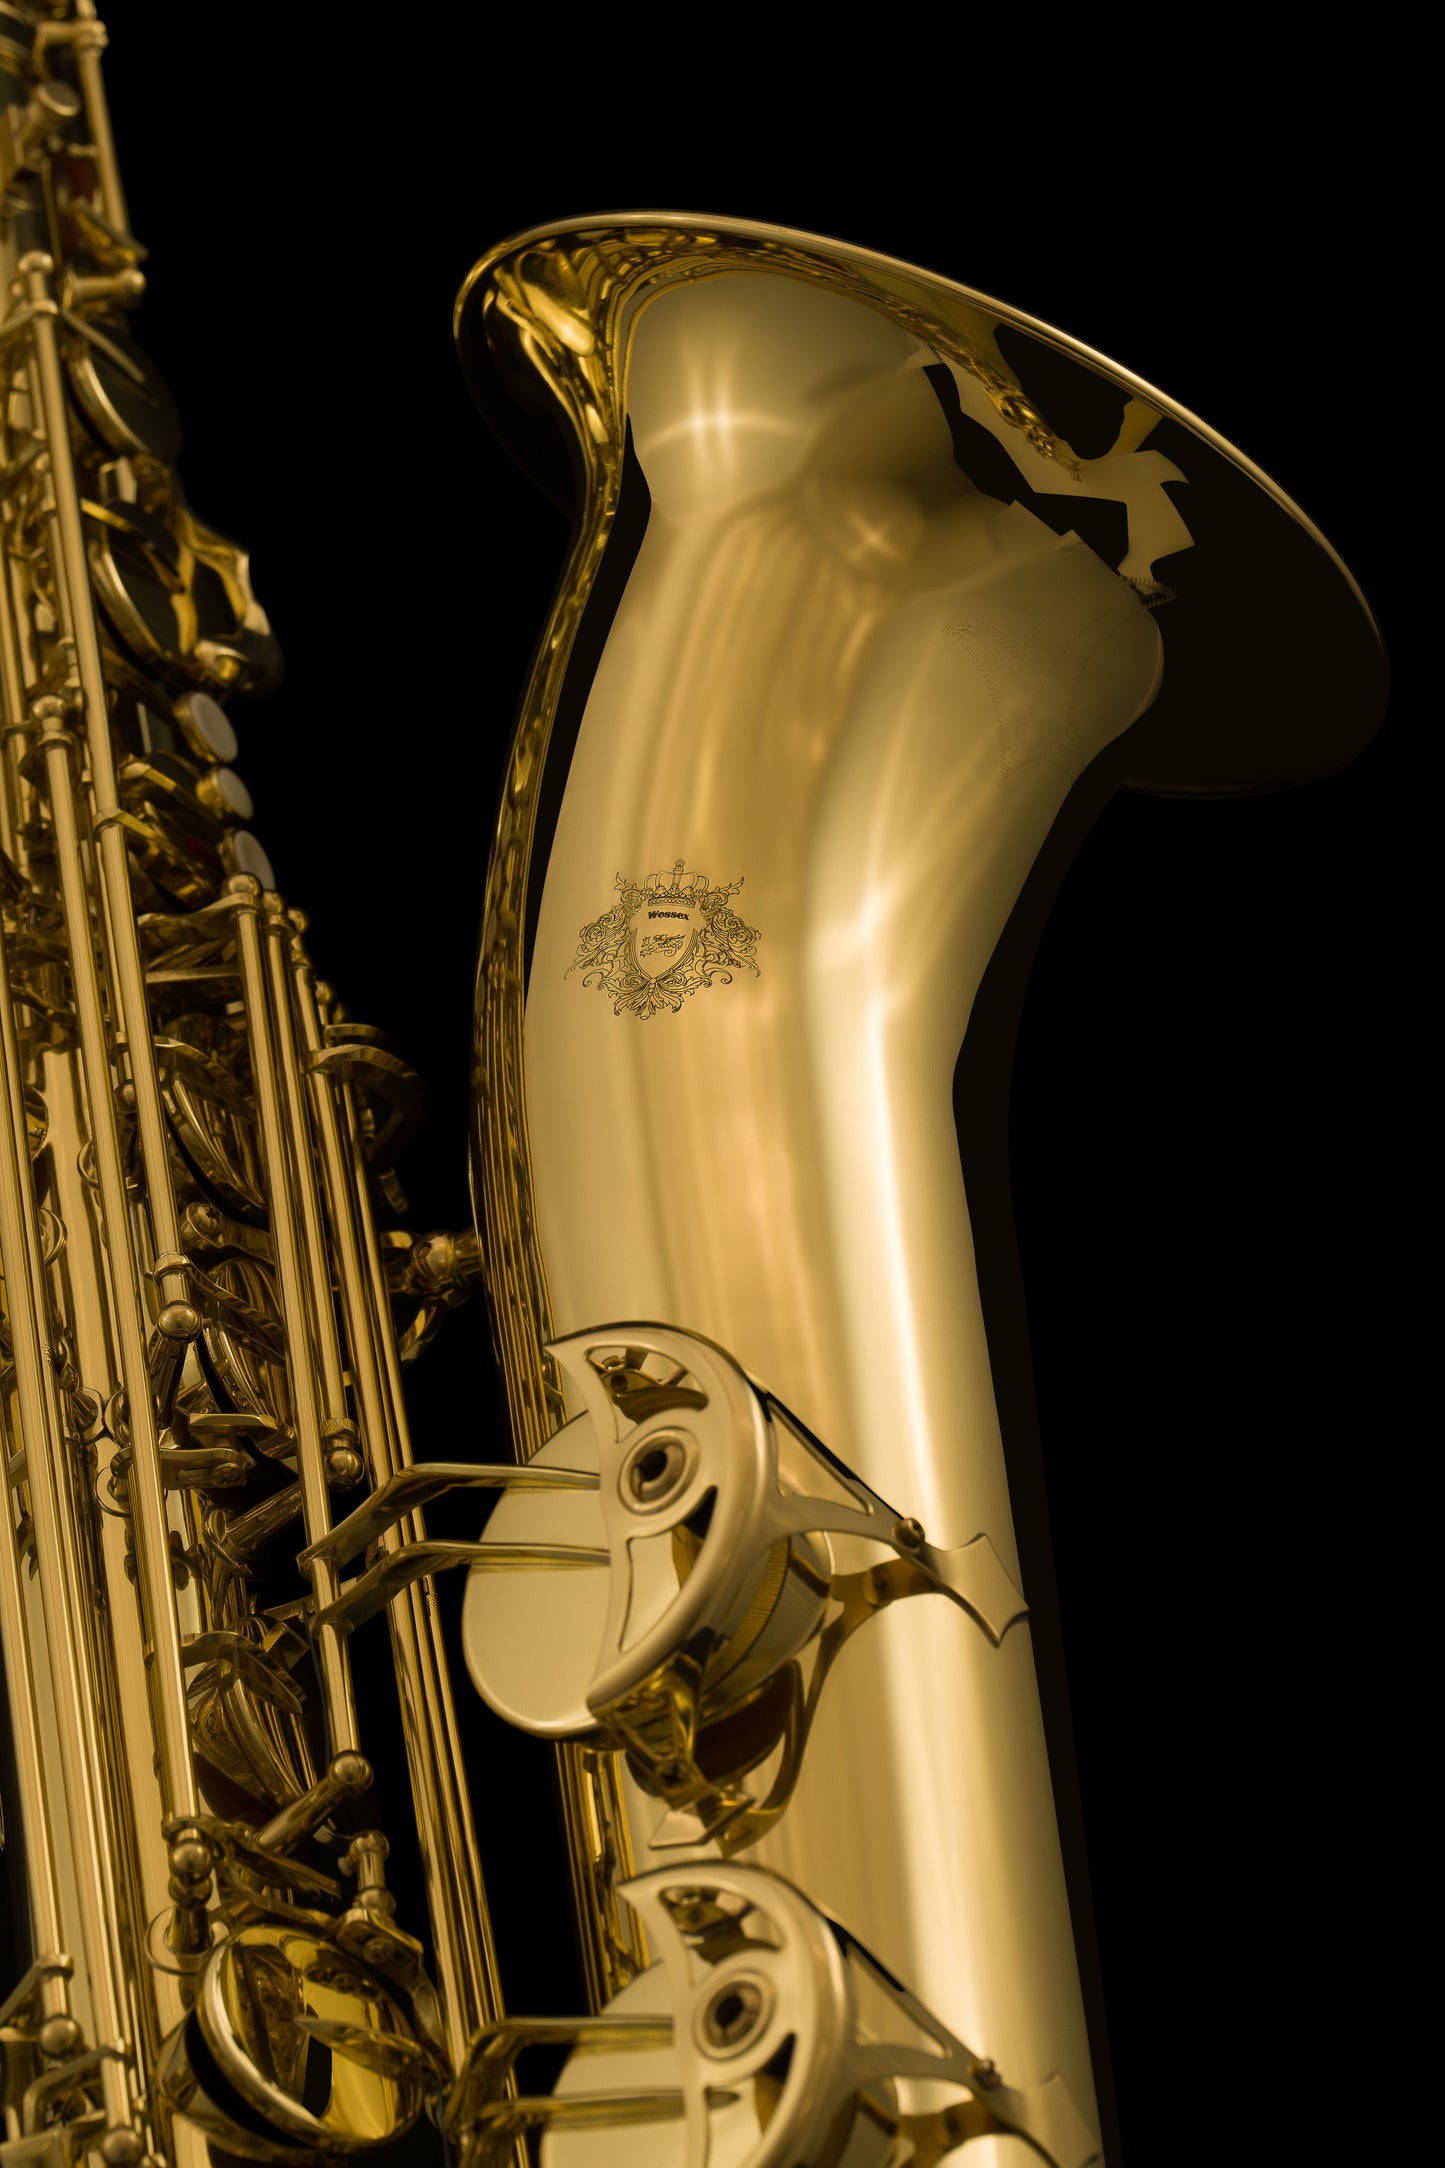 Saxofón Barítono - SAX110